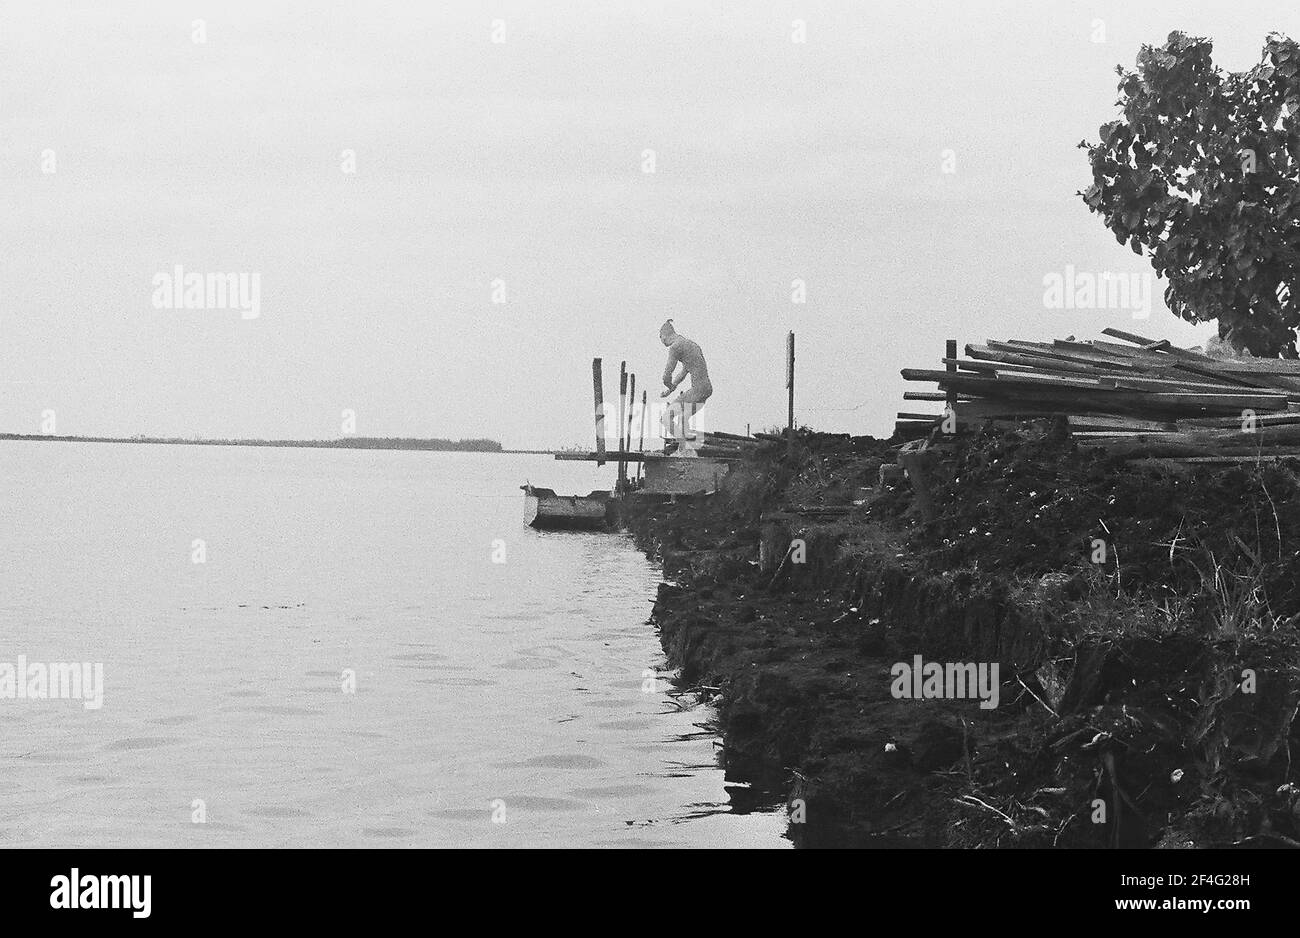 Resort costruito sulla palude drenata vicino a Baia dei Pigs, Cuba, provincia di Matanzas, Playa Giron, visto dalla barca sul canale d'acqua, con la statua presente, 1963. Dalla collezione di fotografie Deena Stryker. () Foto Stock